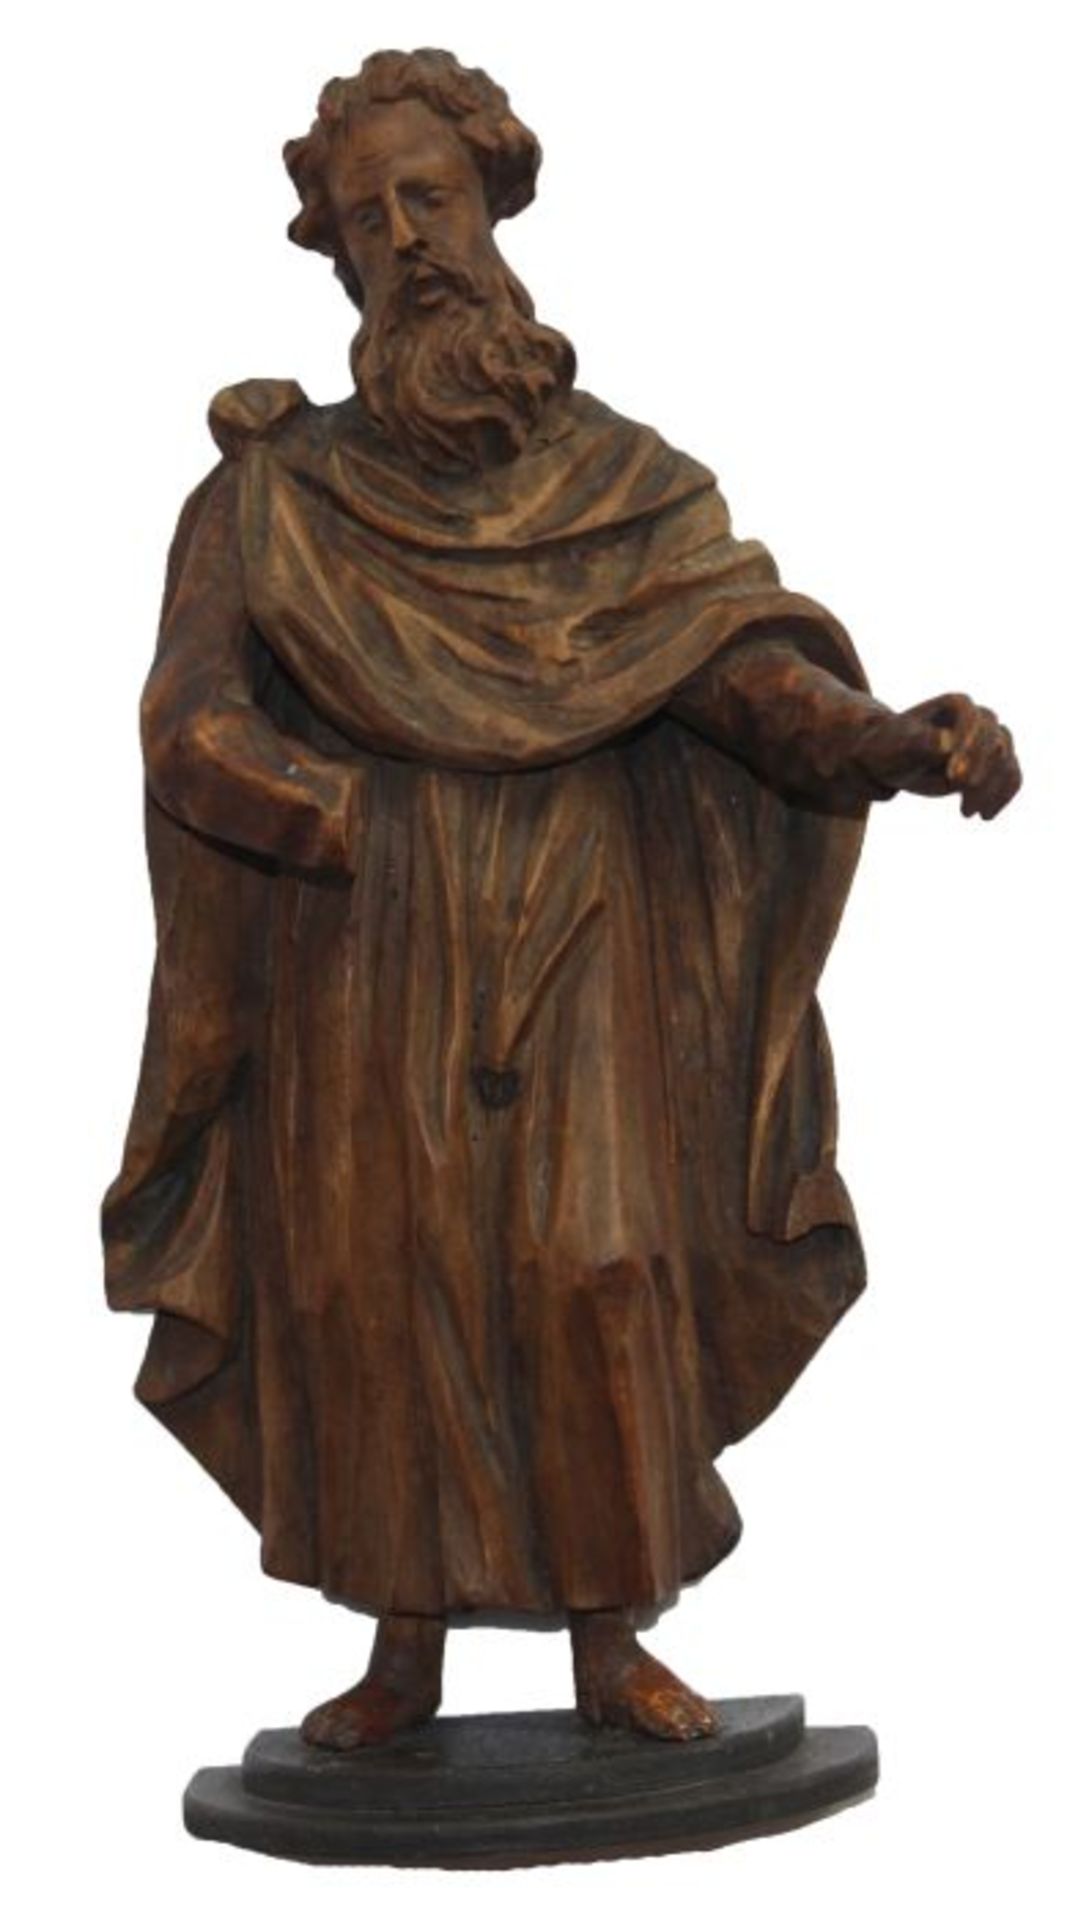 Statuette - wohl deutsch 18.Jahrhundert "Schreitende männliche Figur", Holz geschnitzt, Altersspuren